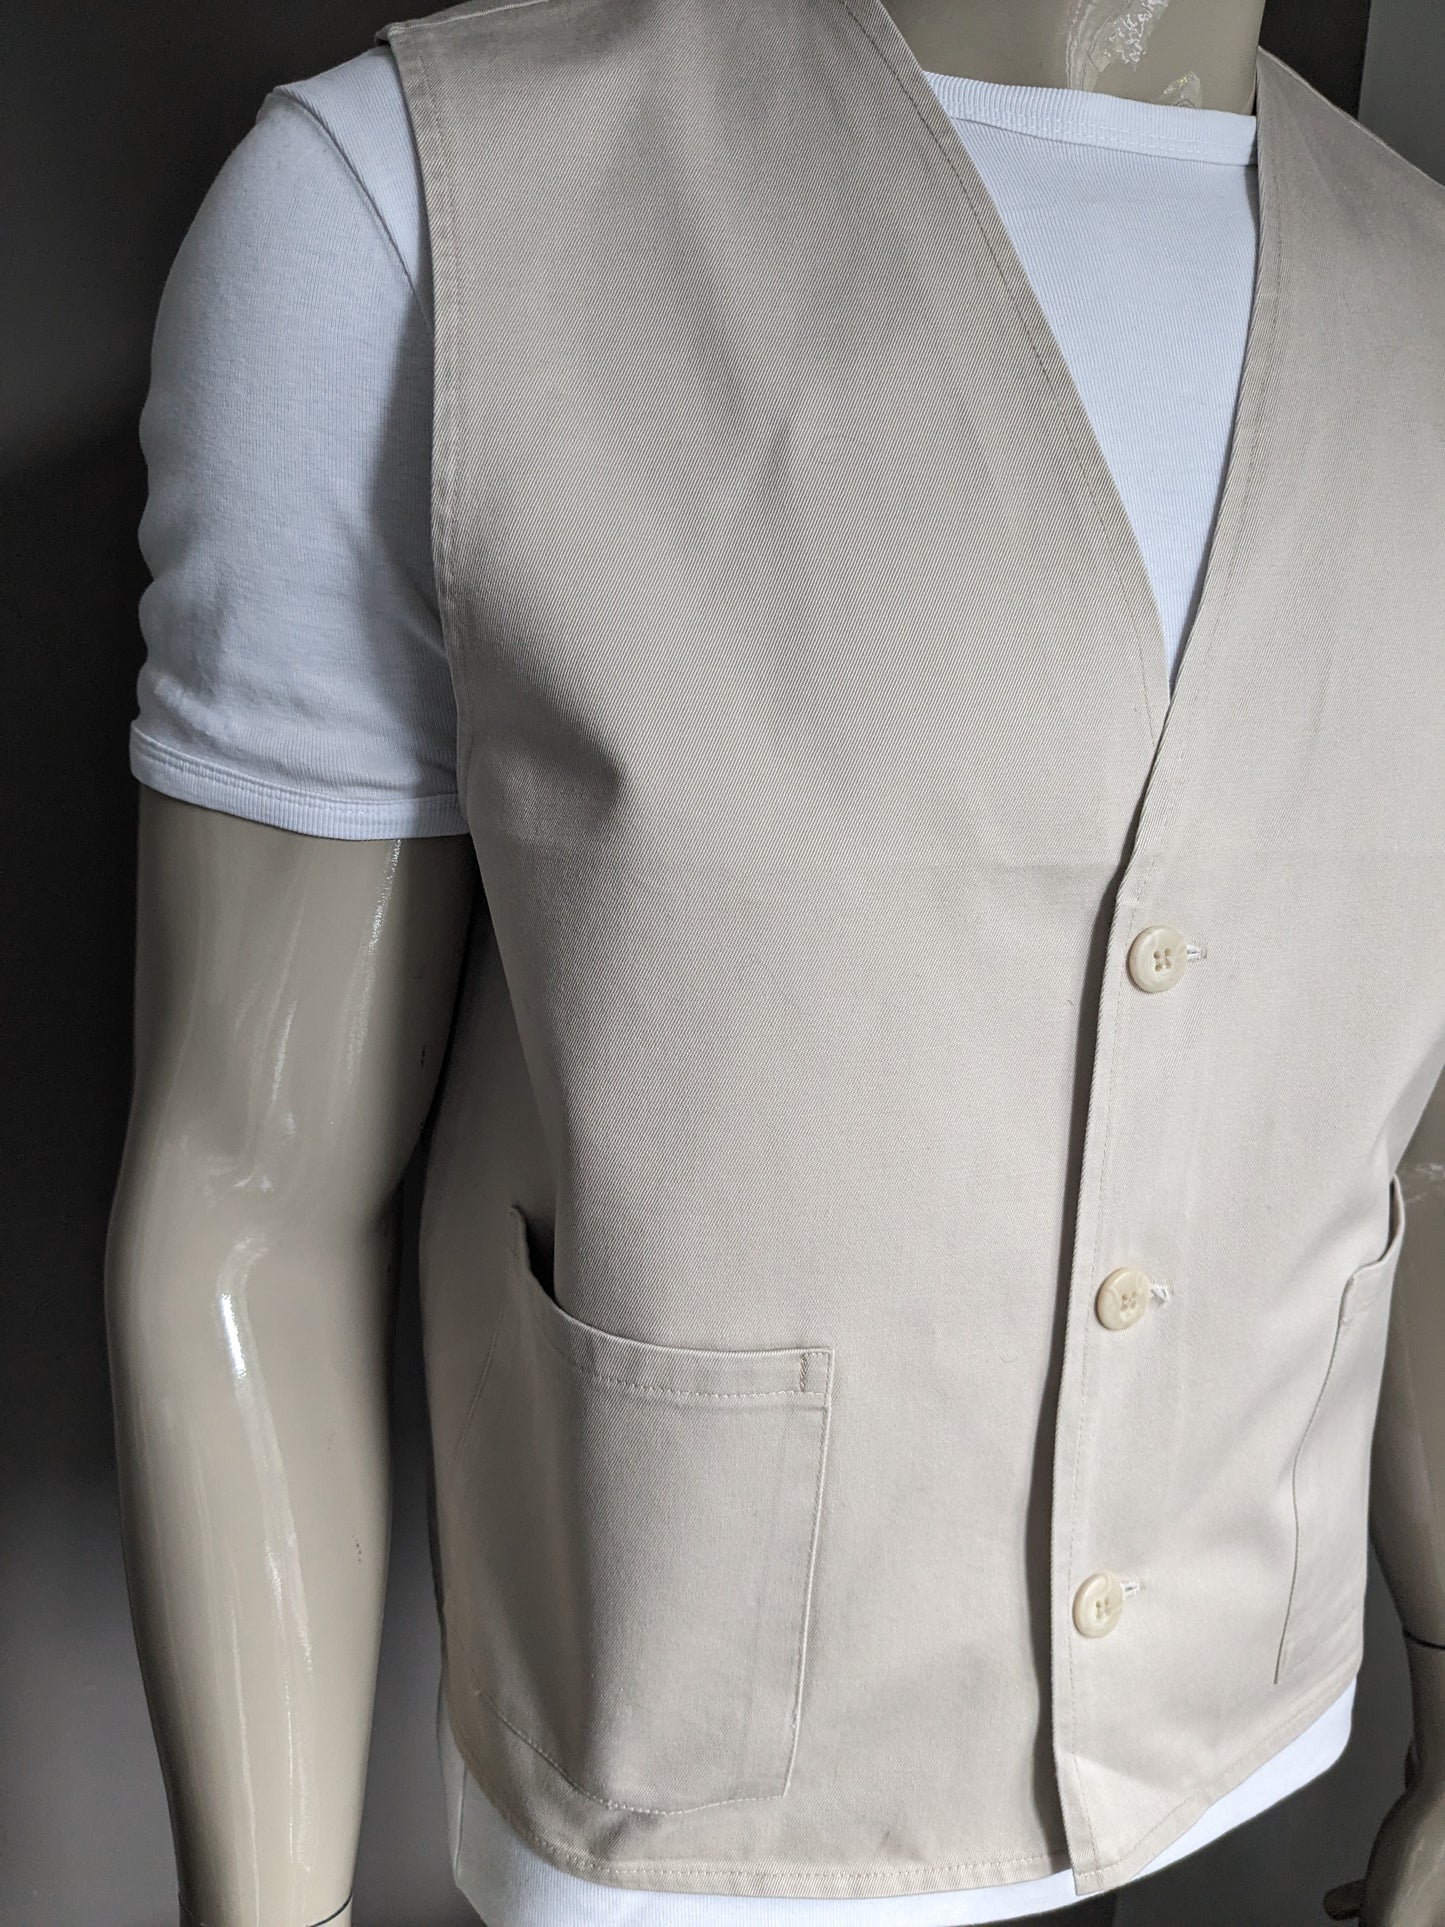 Vintage cotton waistcoat. Beige colored. Size S / M.